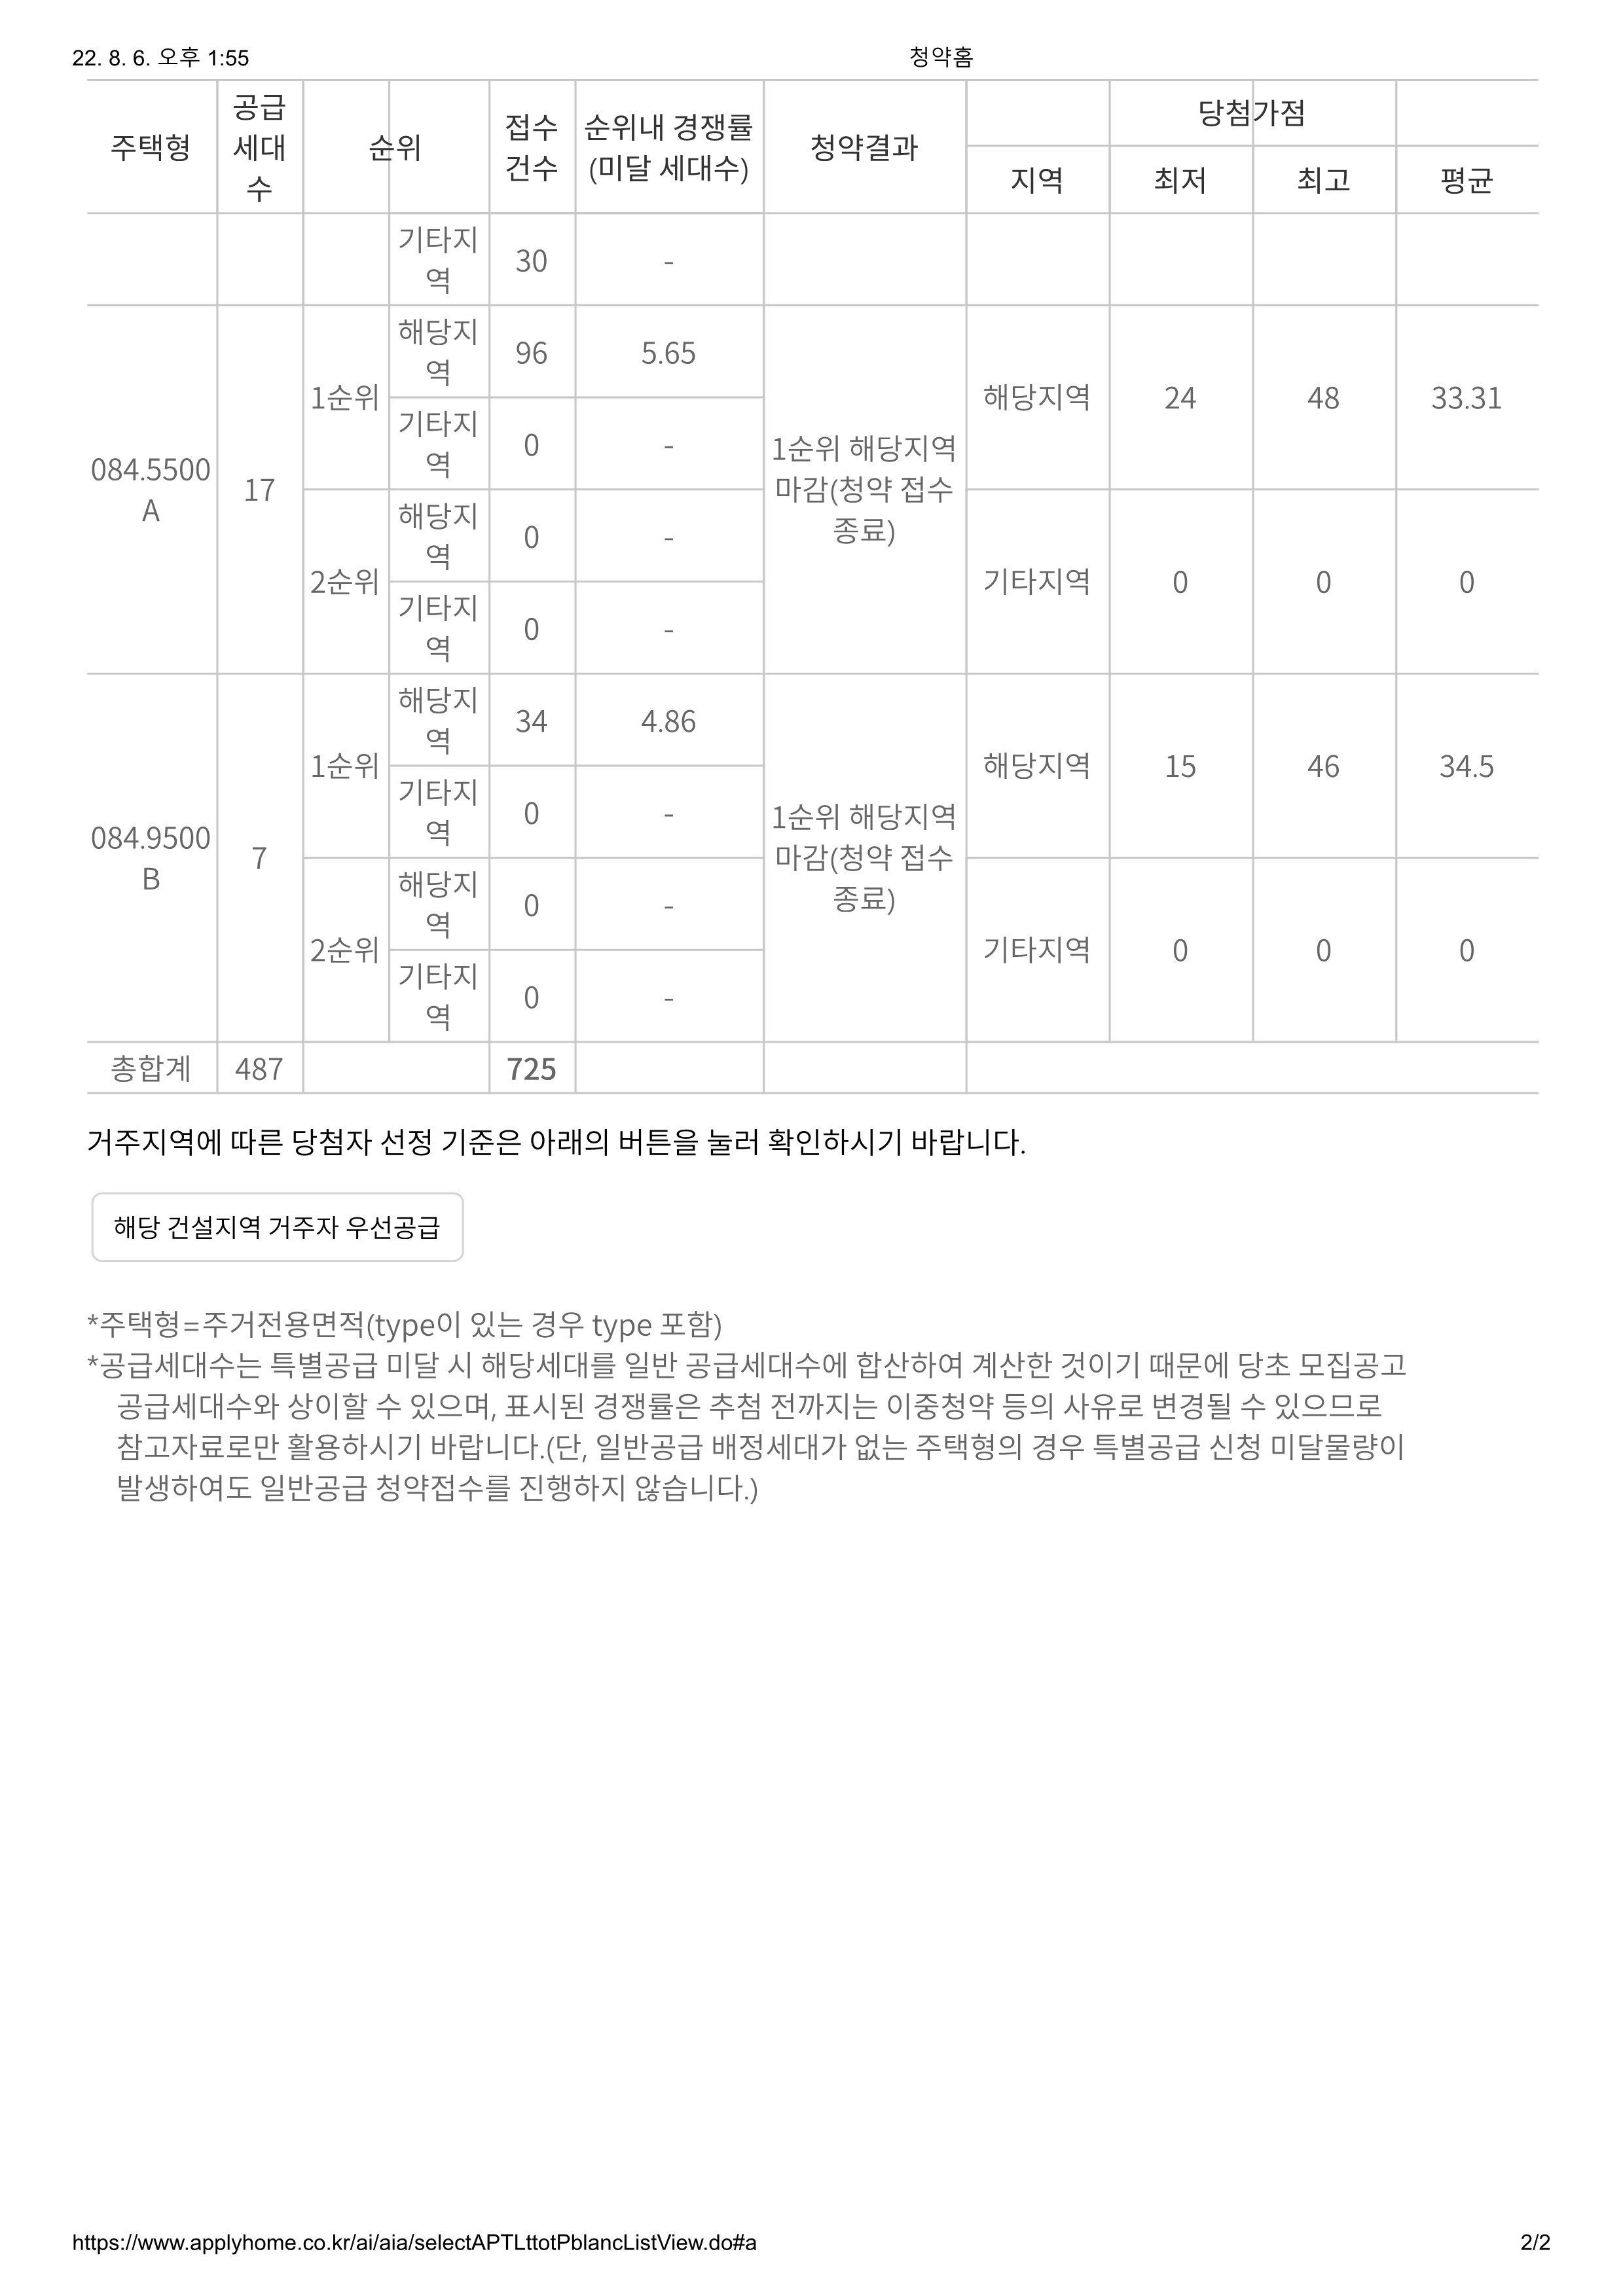 인천 두산위브 더센트럴 청약 경쟁률 정보